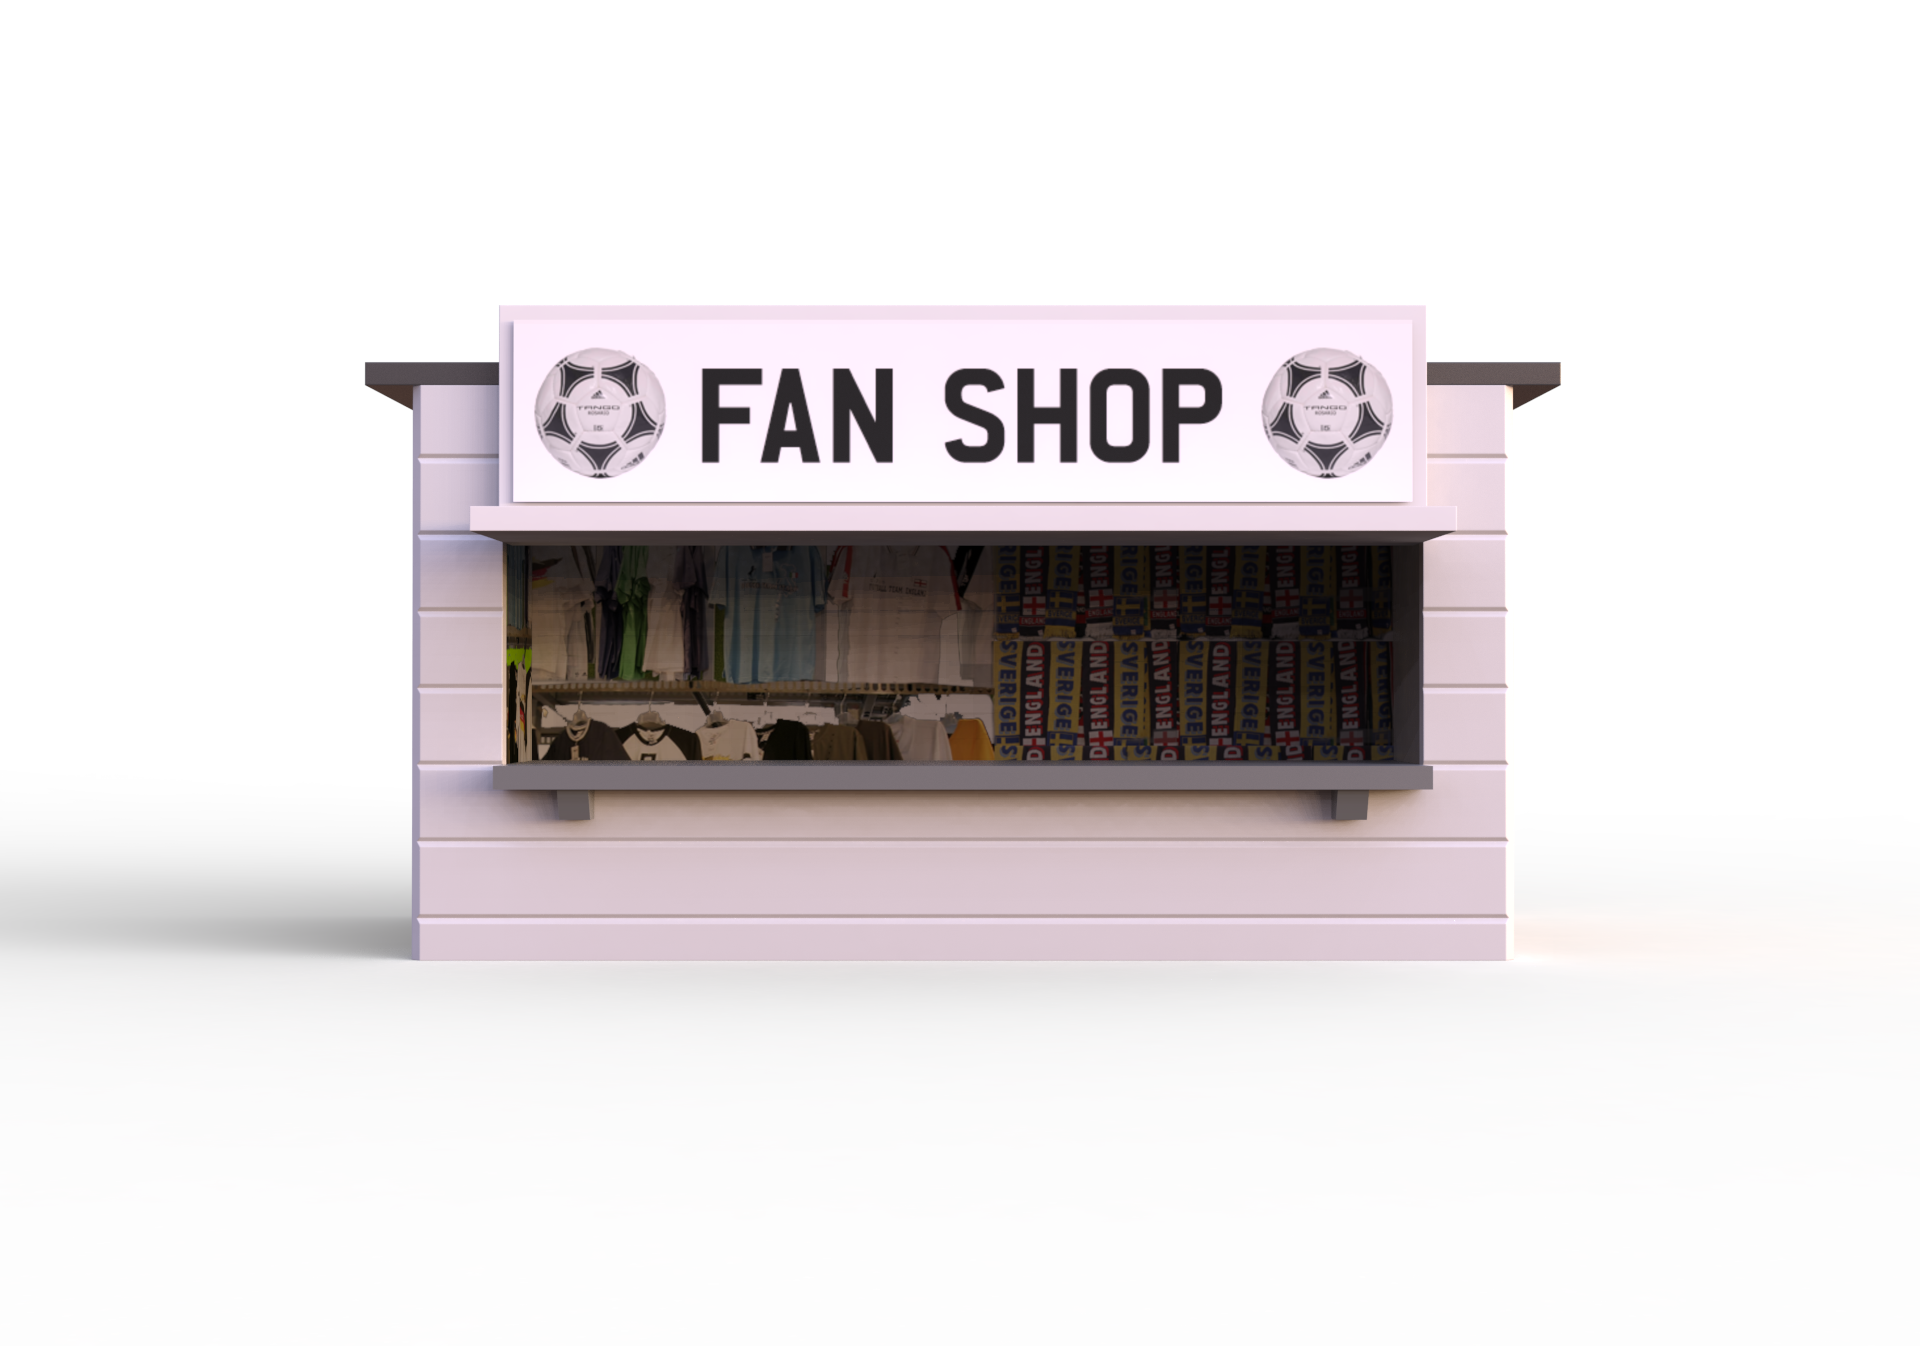 Fan shop